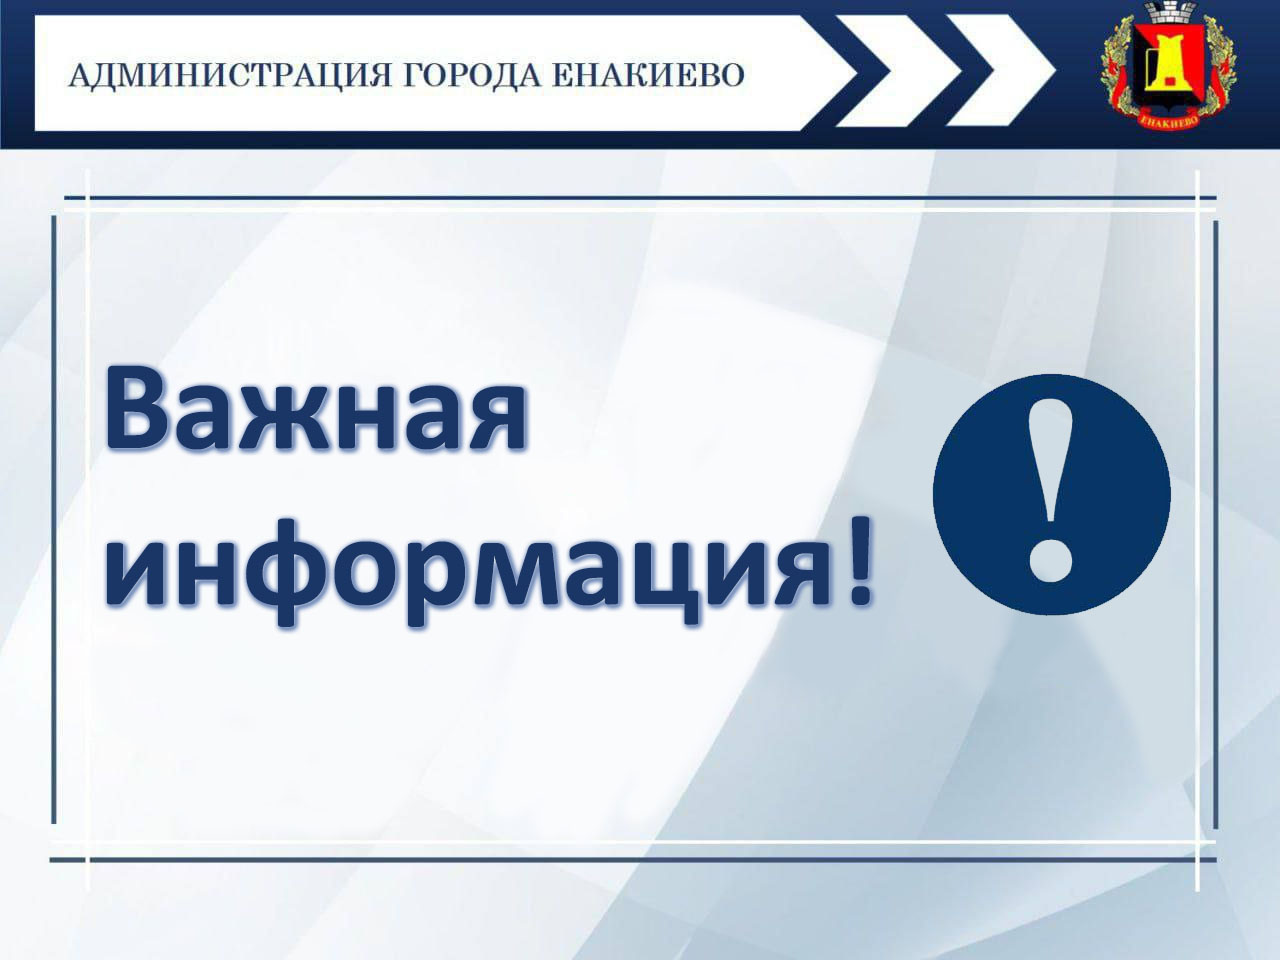 Объявление арендодателя – УЖКХ администрации города Енакиево.